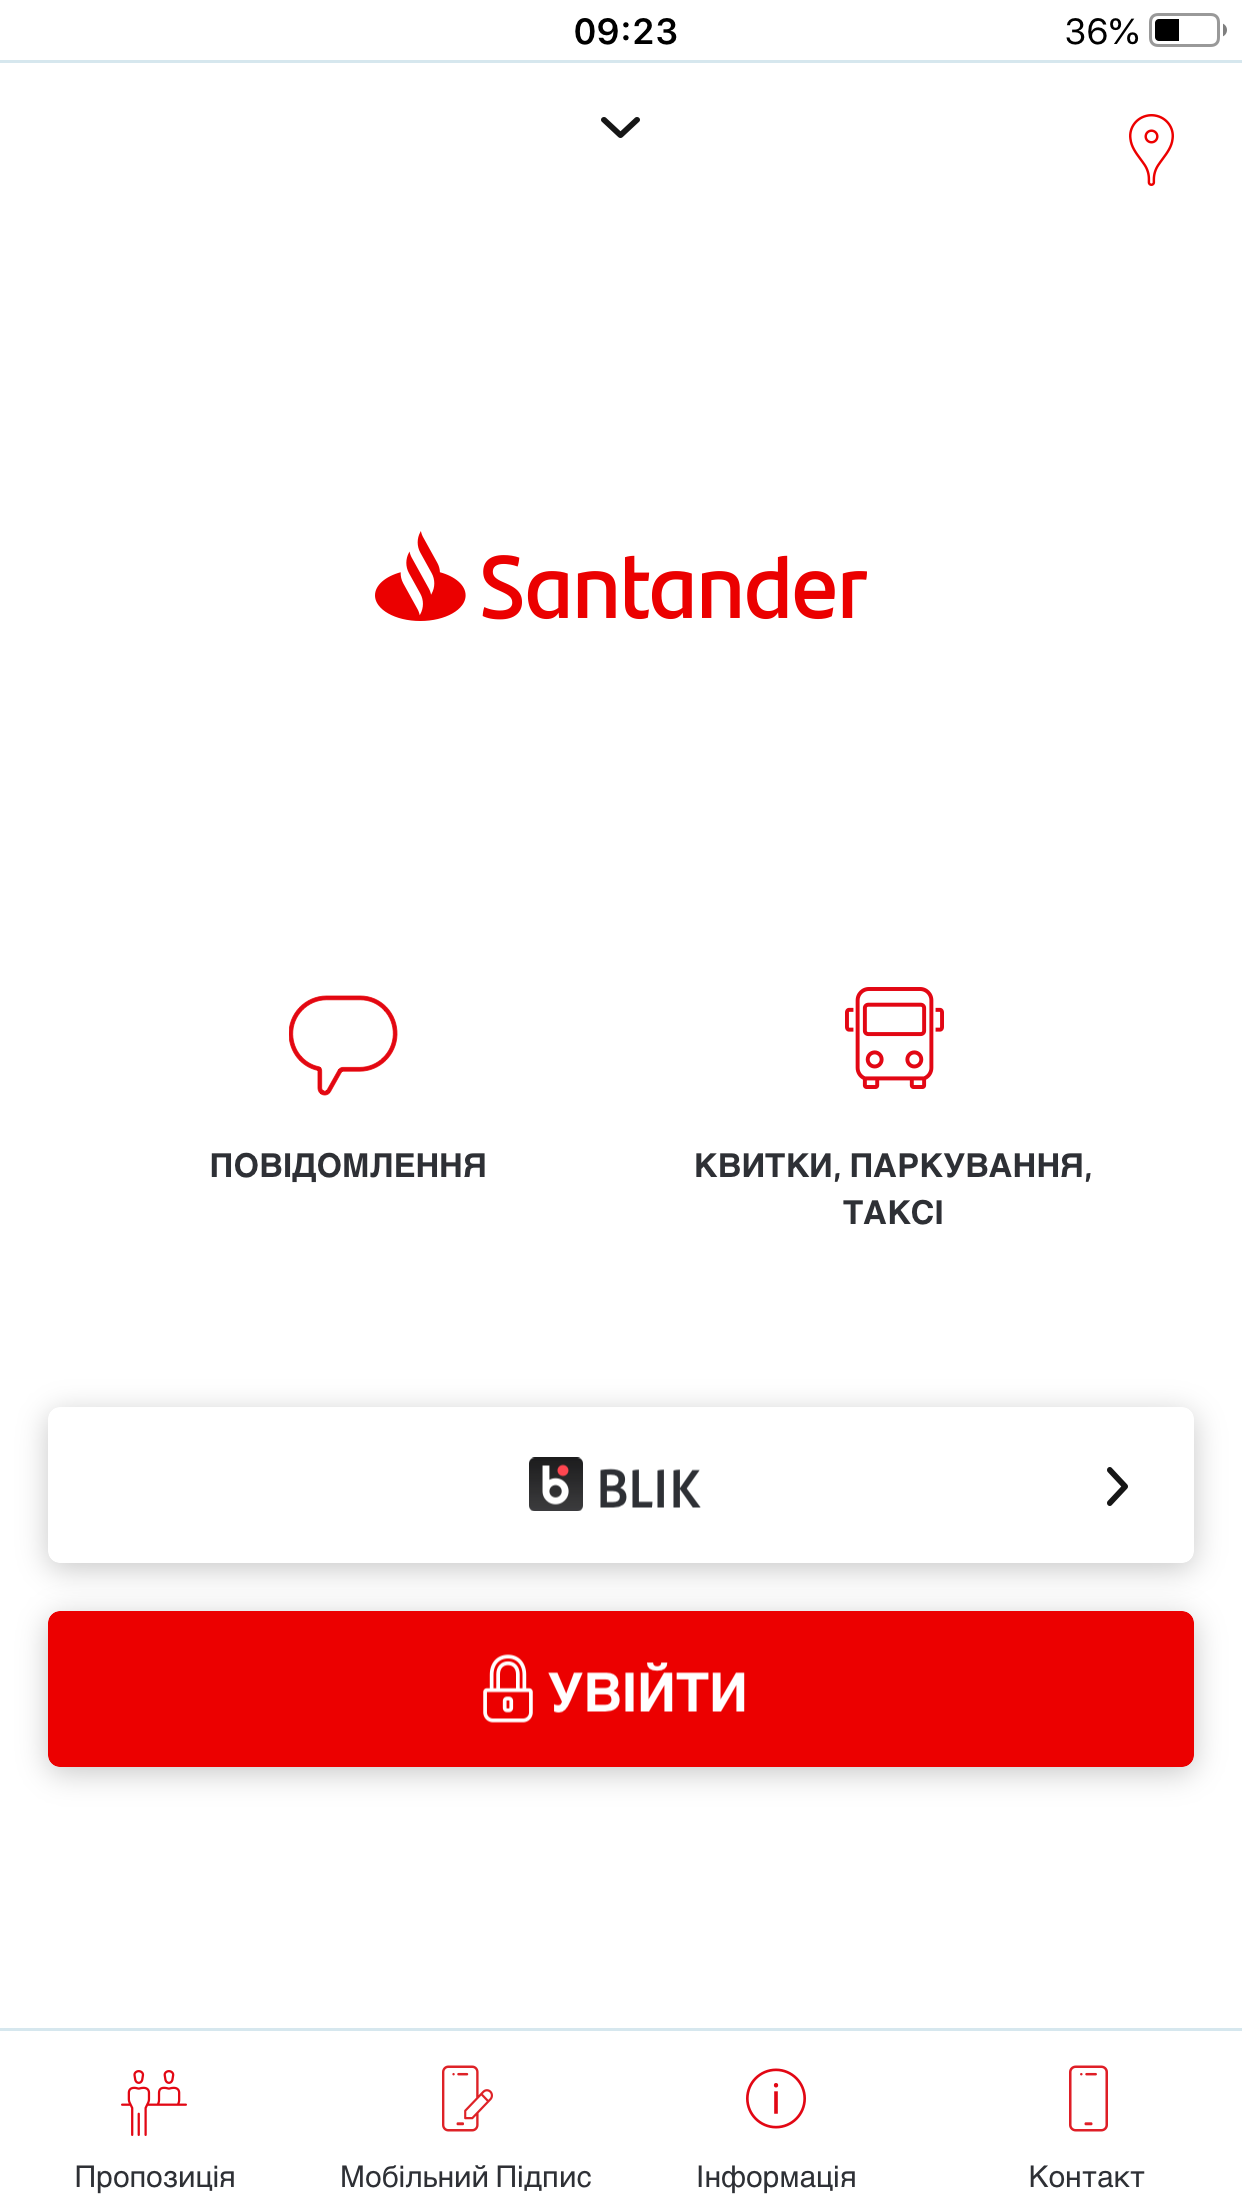 Aplikacja Santander mobile i bankowość internetowa Santander dostępne dla klientów po ukraińsku i rosyjsku